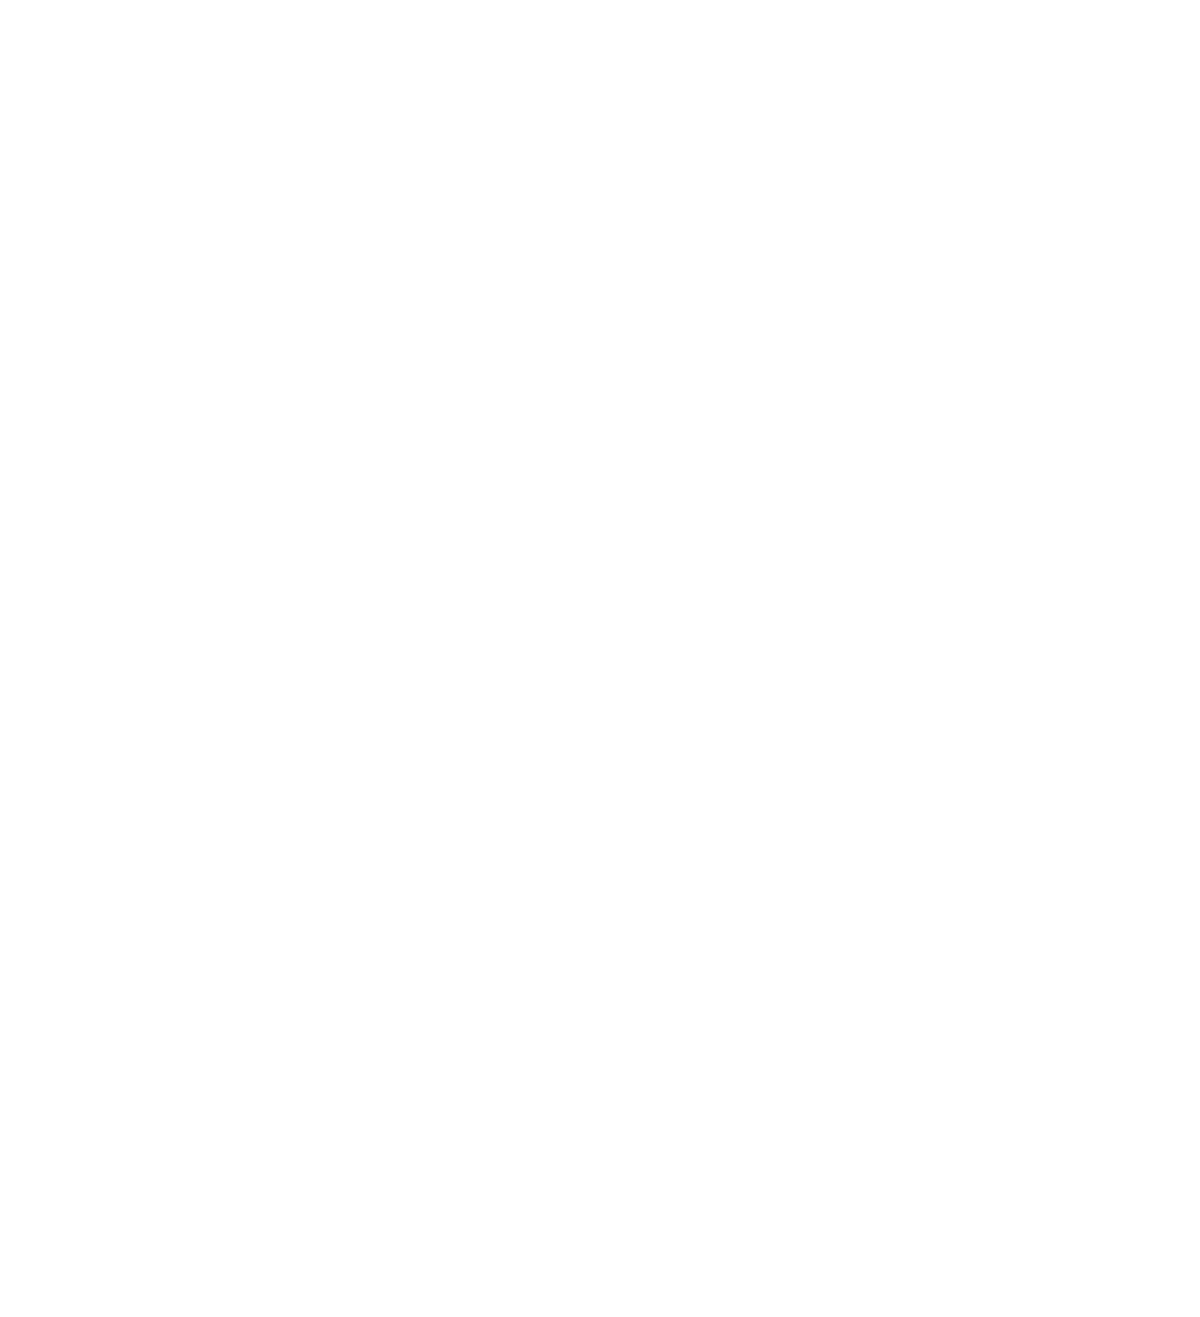 UNAC Virtual